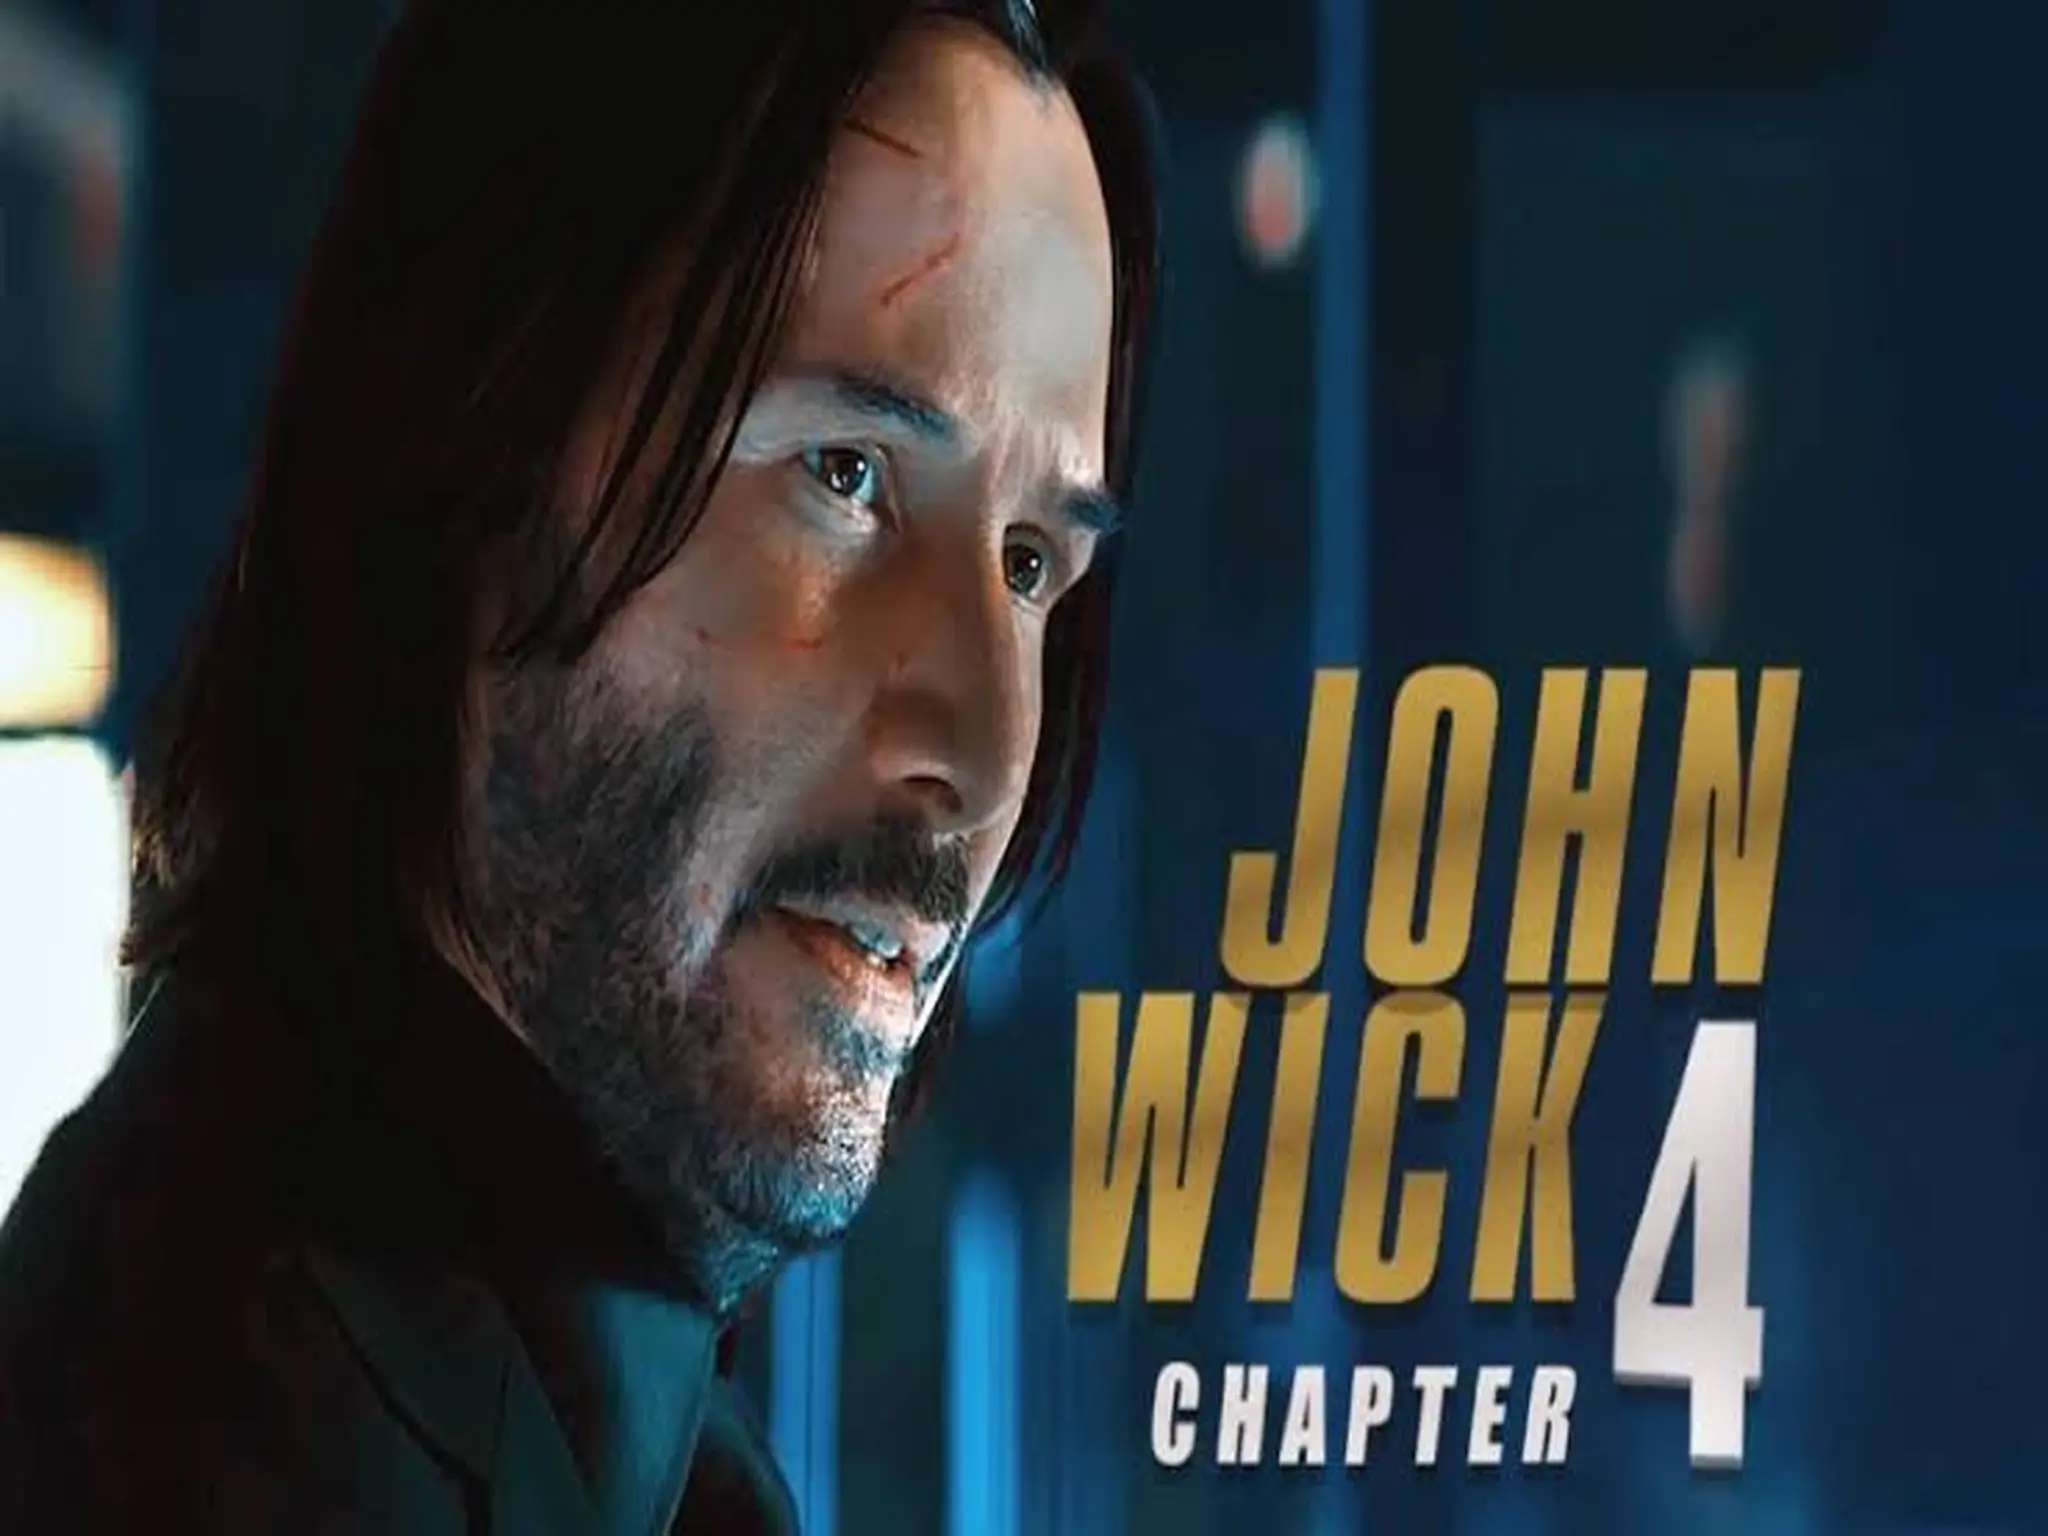 صدور فيلم John Wick 4 في السينمات العربية ضمن فعاليات عيد الفطر